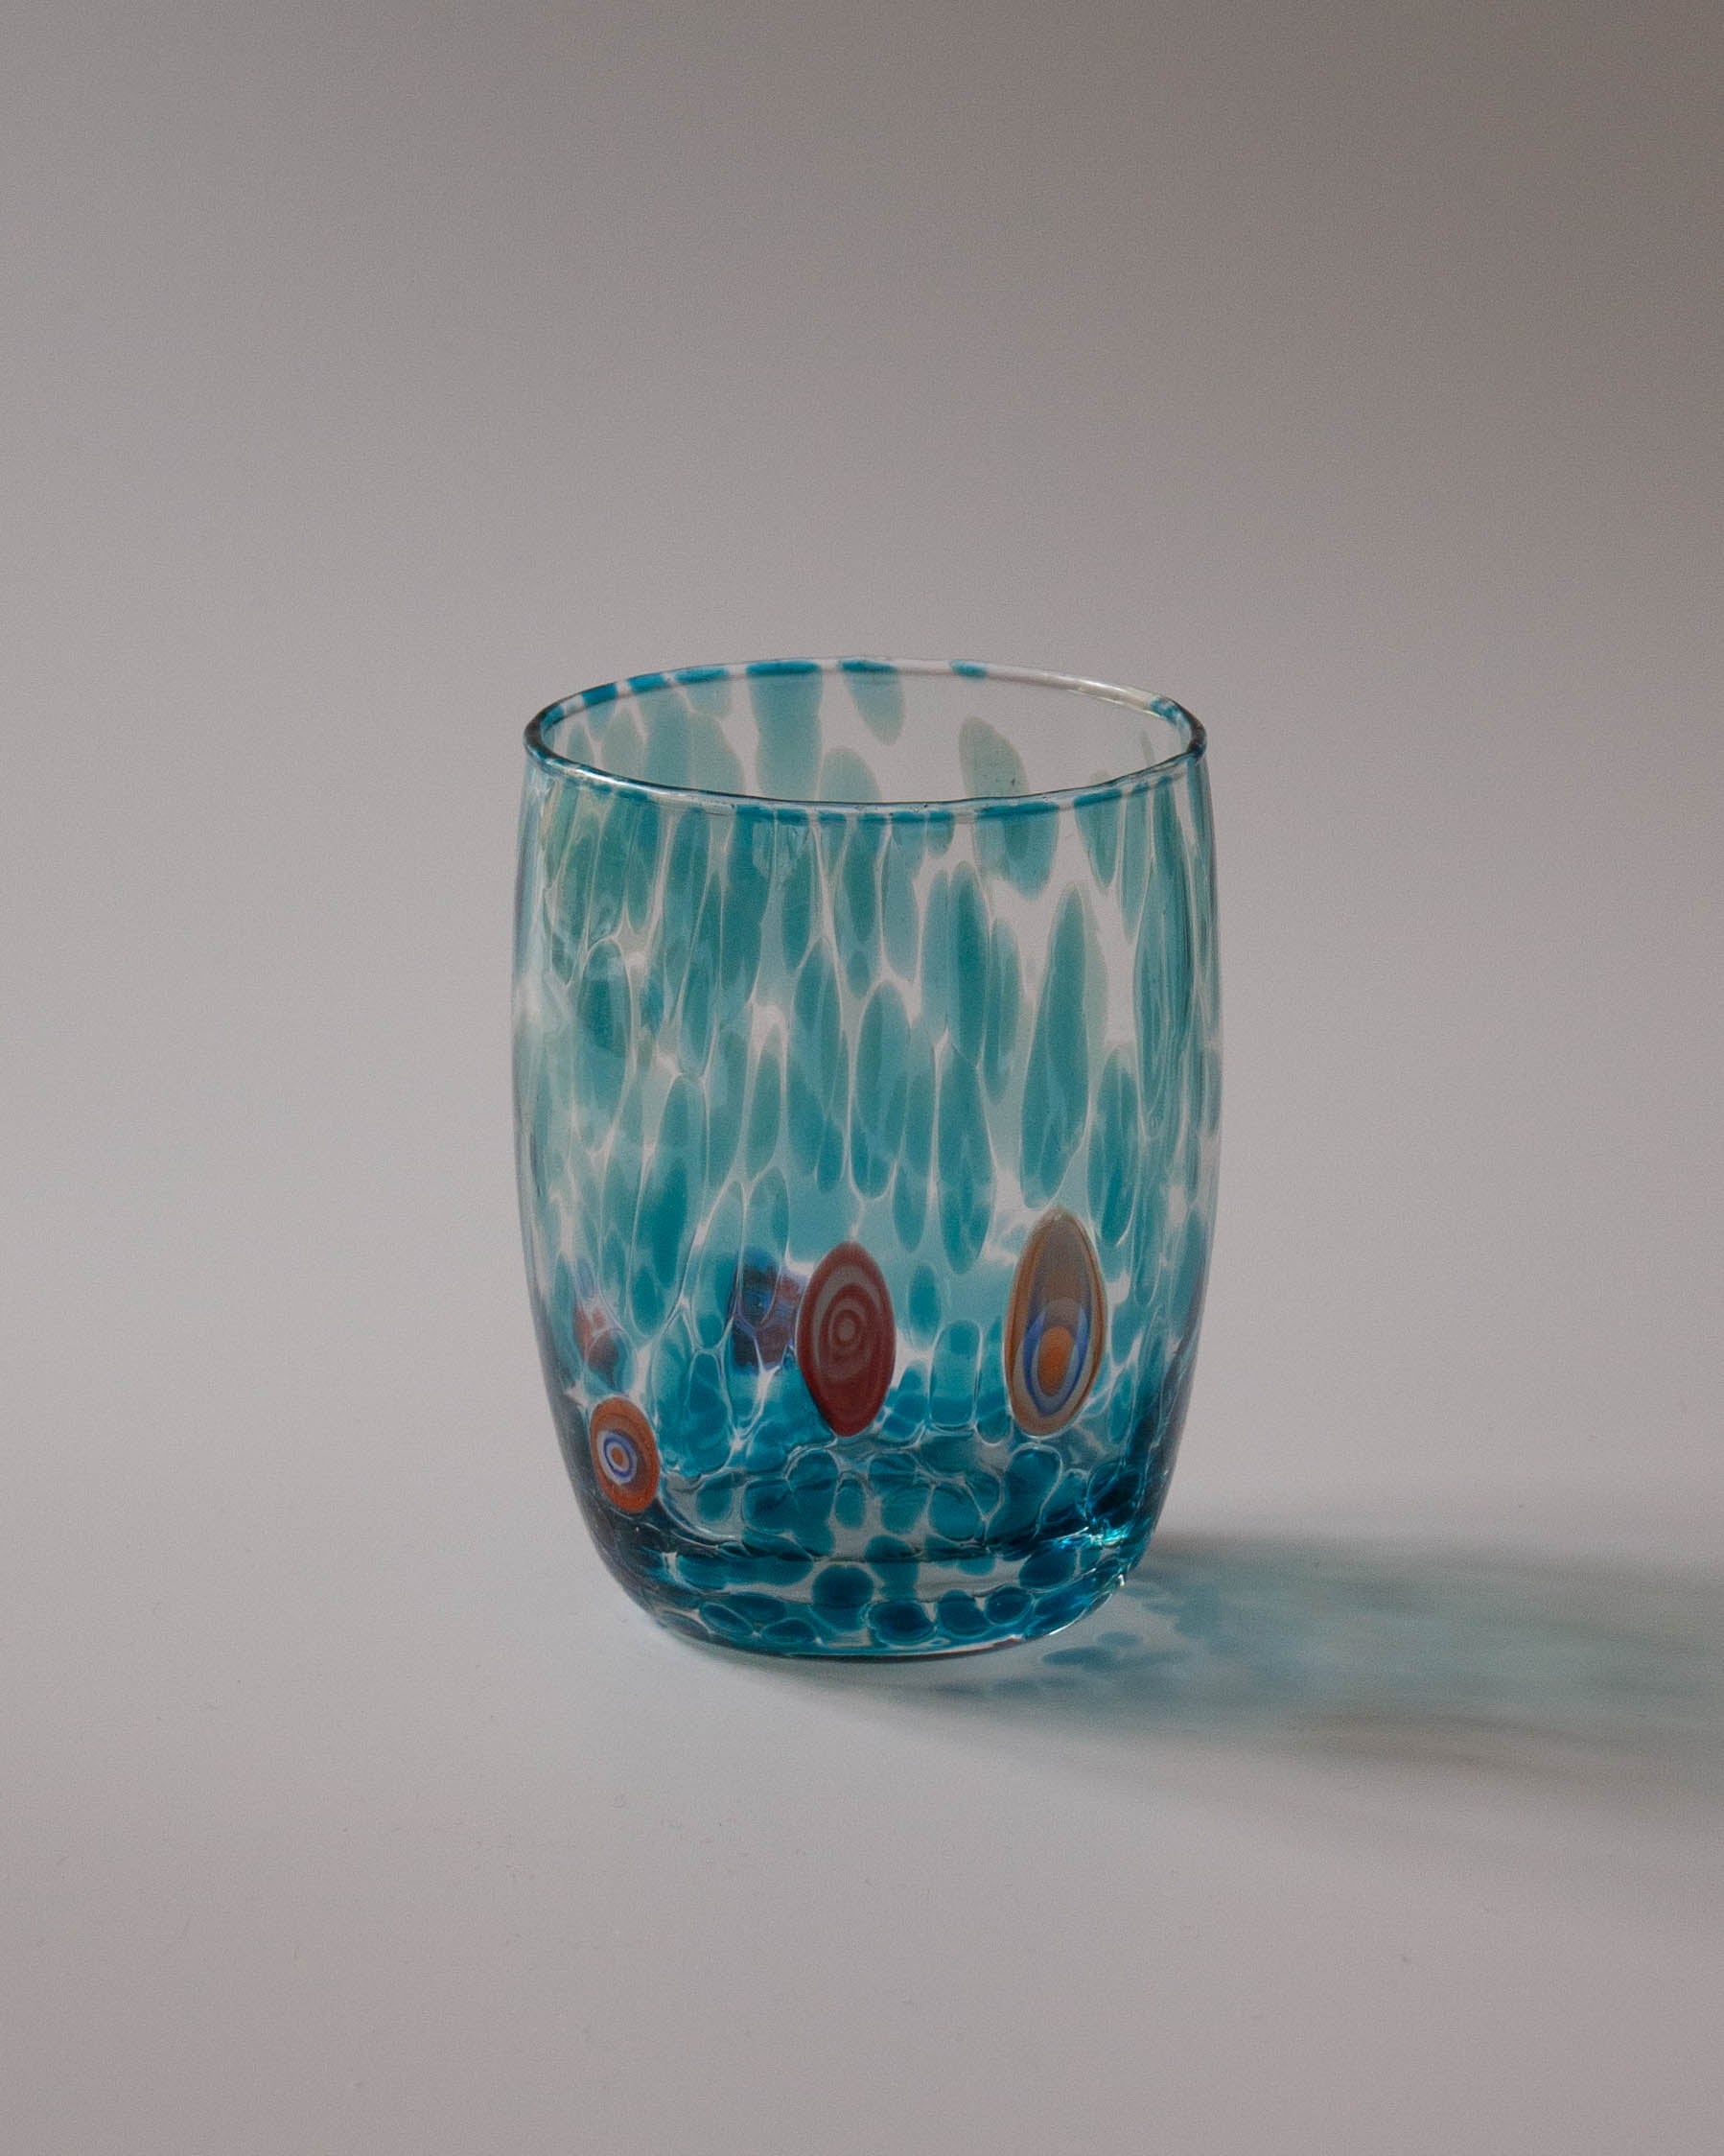 Vaso de Murano azul soplado a mano - Juego de 4